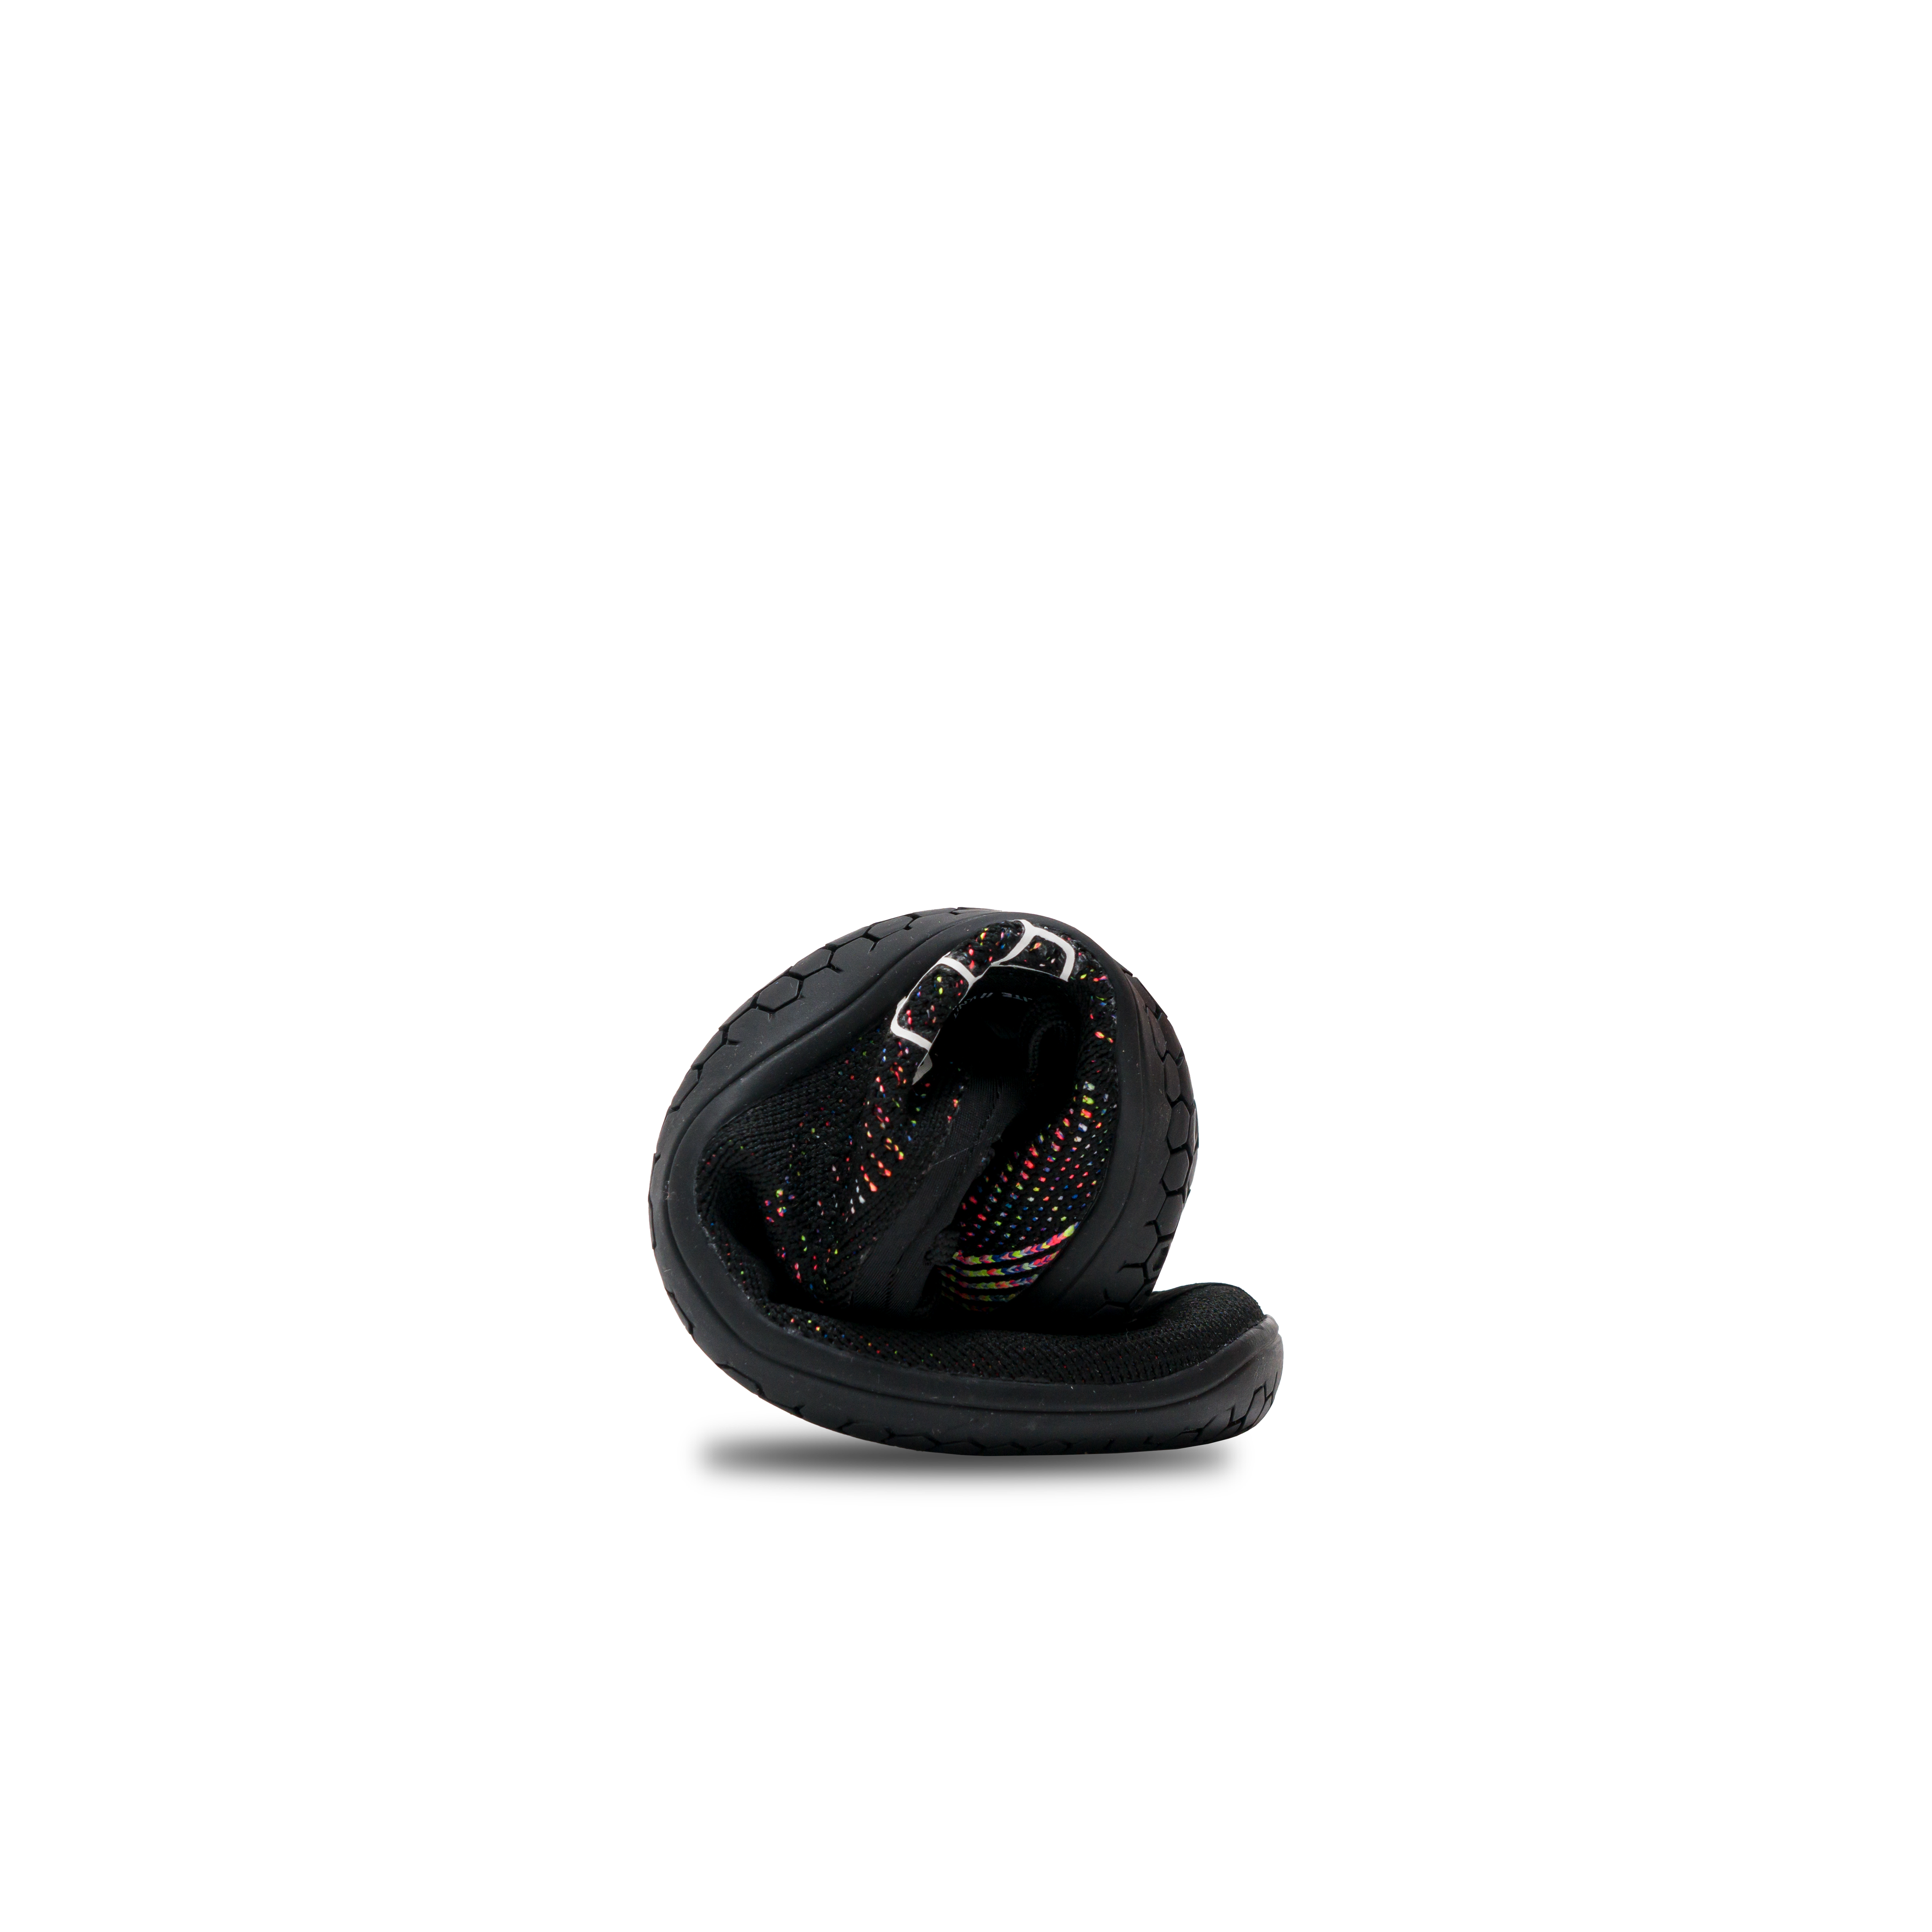 Vivobarefoot Primus Lite Knit til kvinder i varianten Obsidian Iridescent, vist i unikt rullet perspektiv, fremhæver iriserende indre mønster og tynd, fleksibel sål for barfodsfornemmelse.